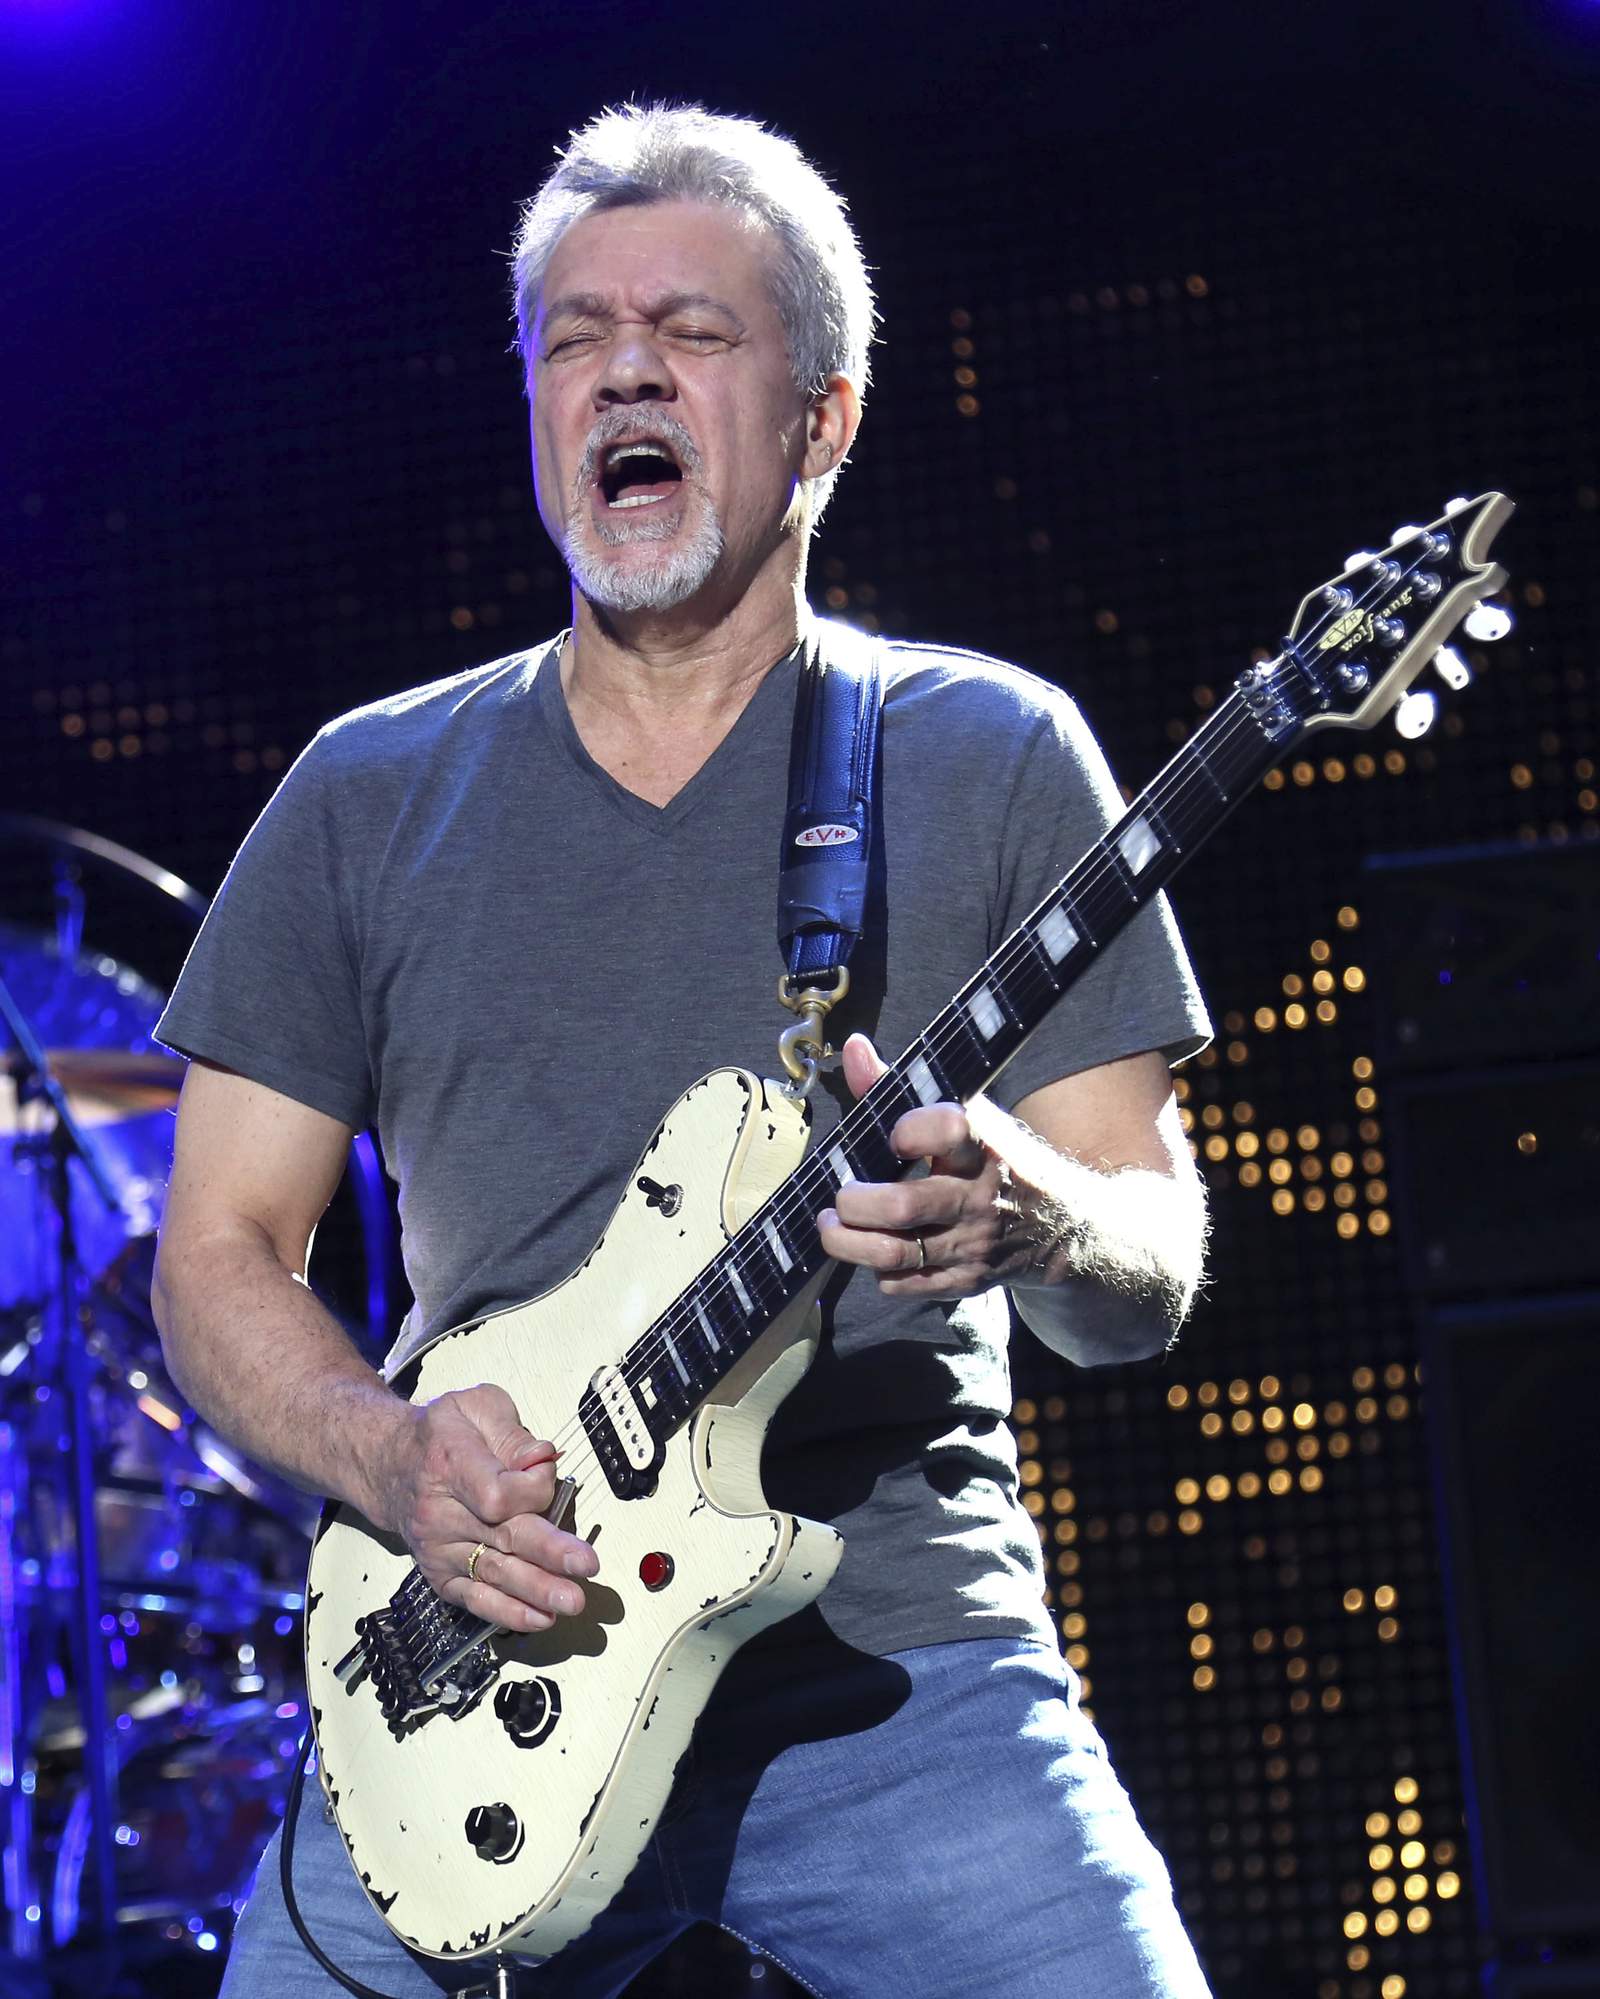 Van Halen's California hometown plans memorial to guitarist